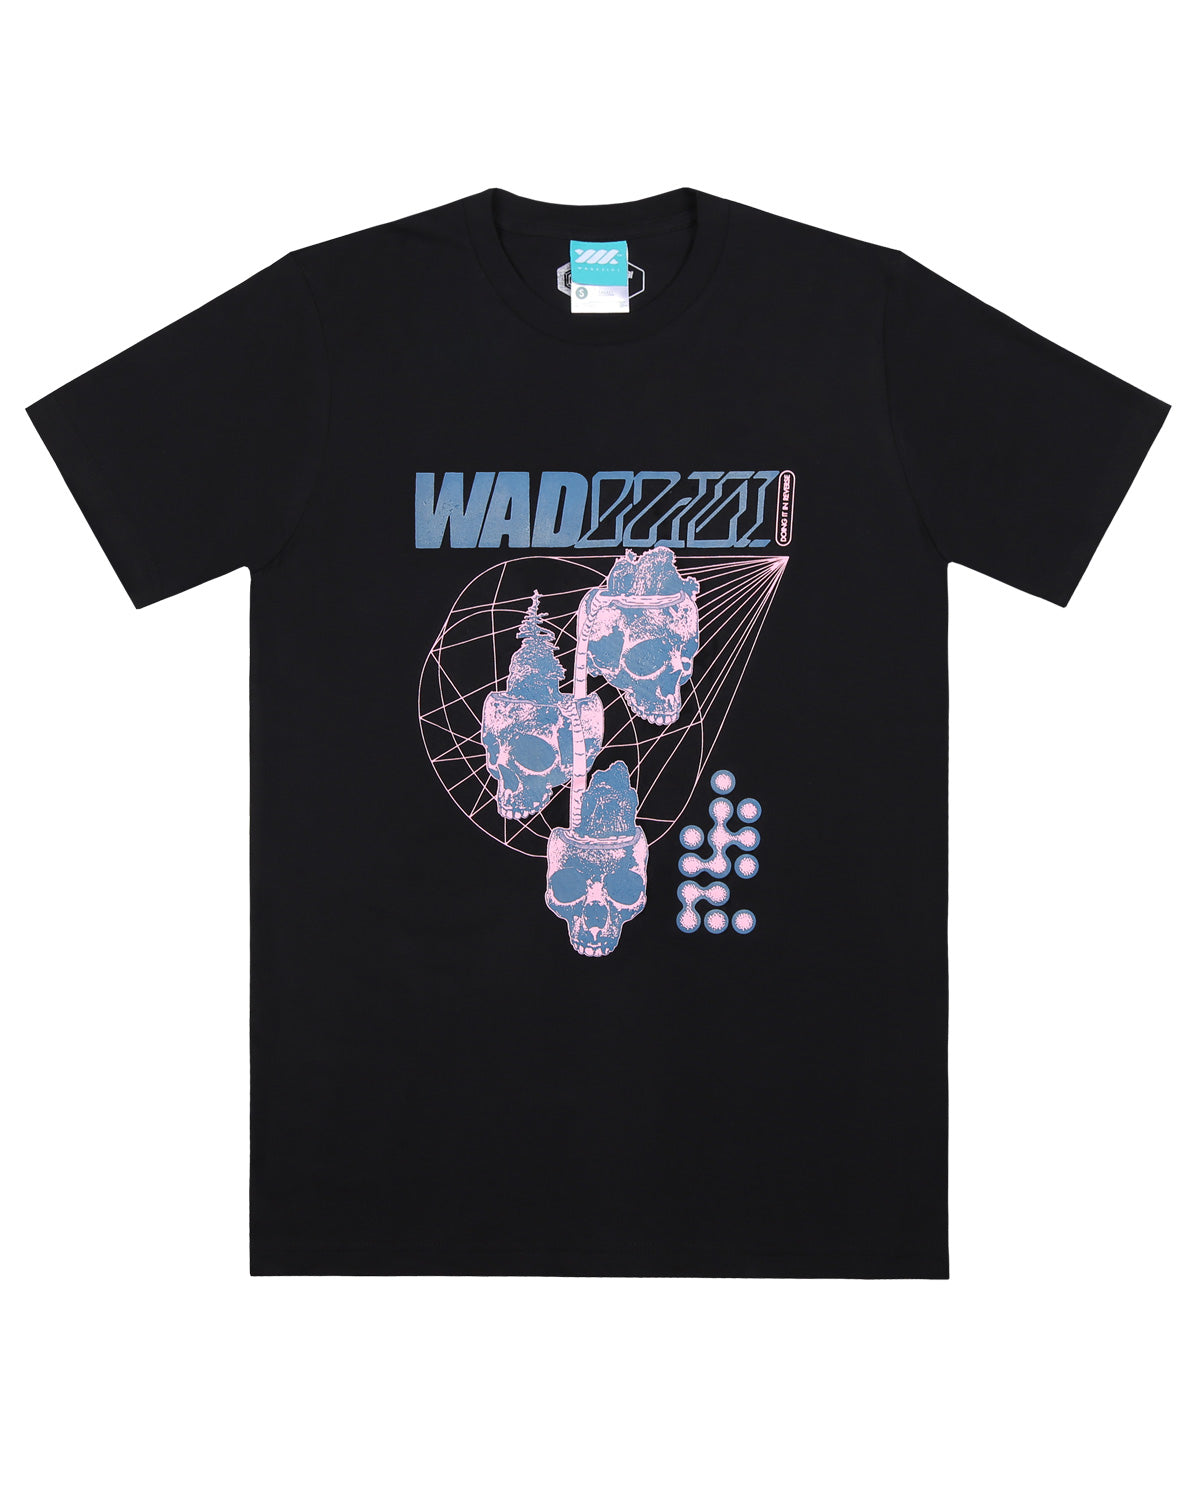 Wadezig! T-Shirt - Waterfall Black Tees